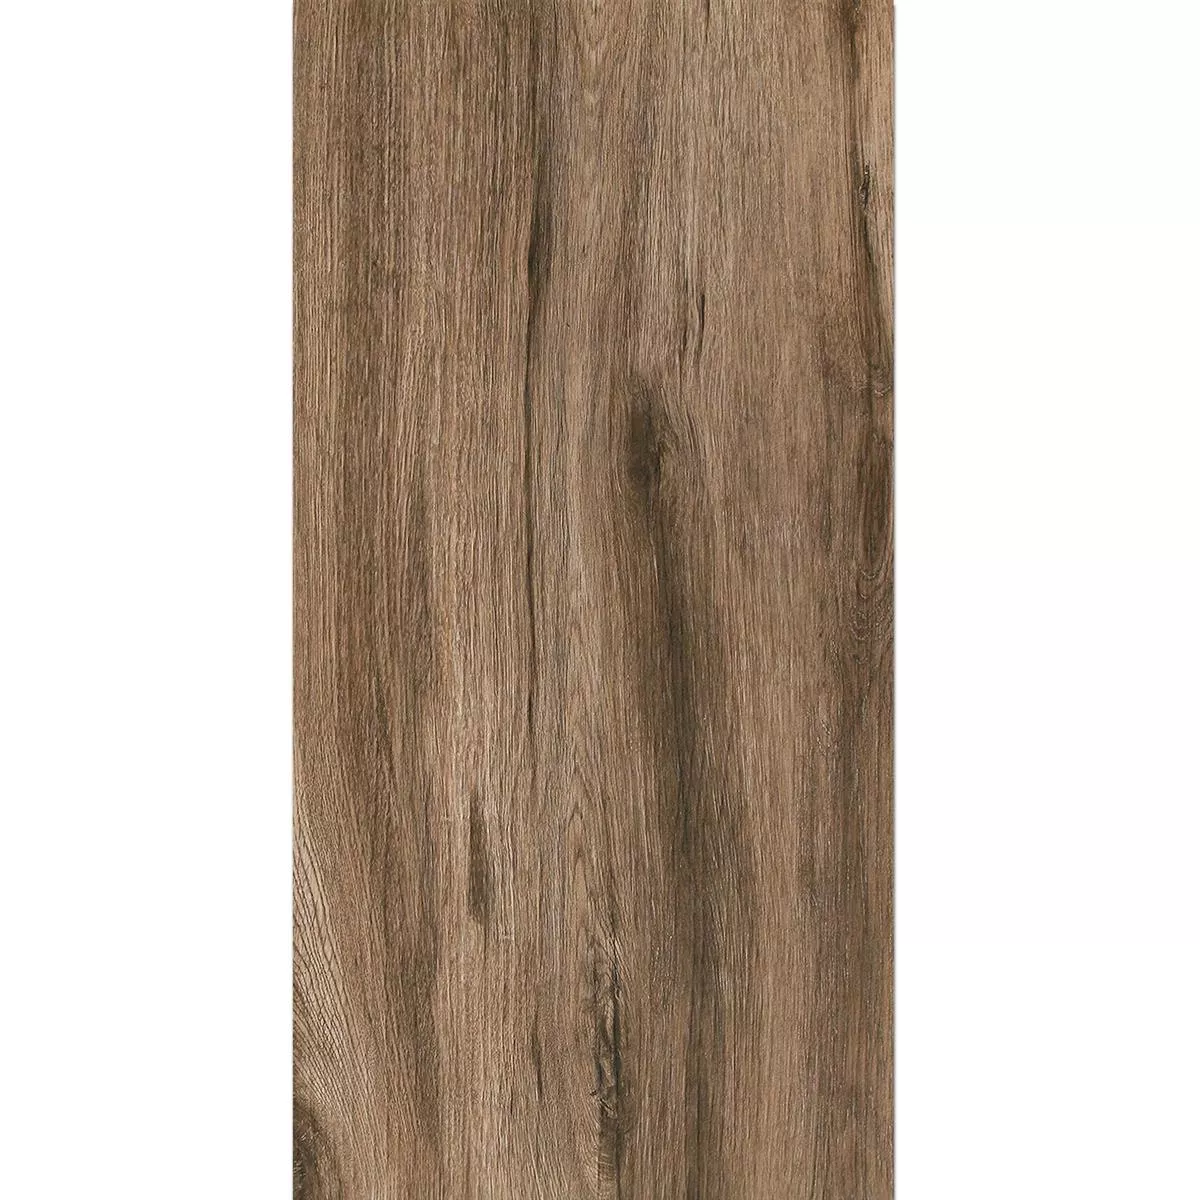 Échantillon Dalles De Terrasse Starwood Imitation Bois Ebony 45x90cm